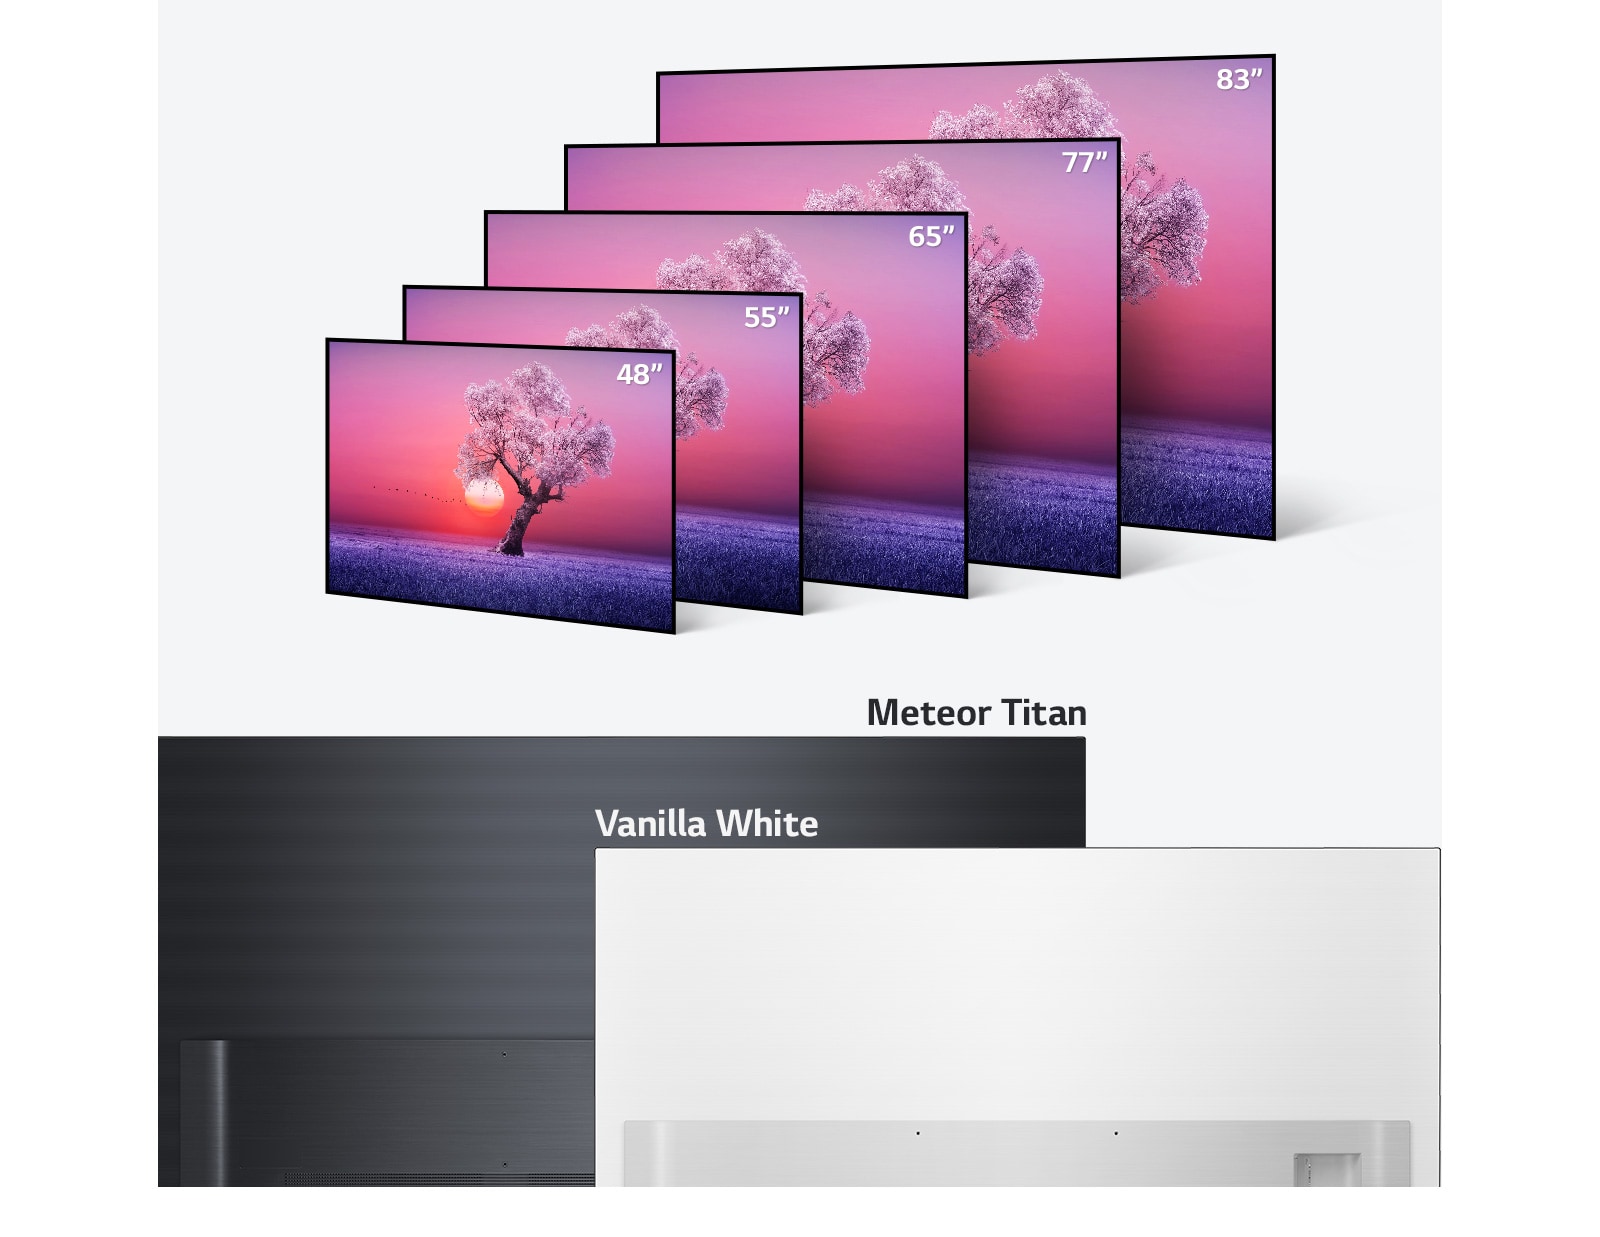 Produktová rada LG OLED TV v rôznych veľkostiach od 48 palcov do 83 palcov a vo farbách svetlo čiernej a vanilkovej bielej